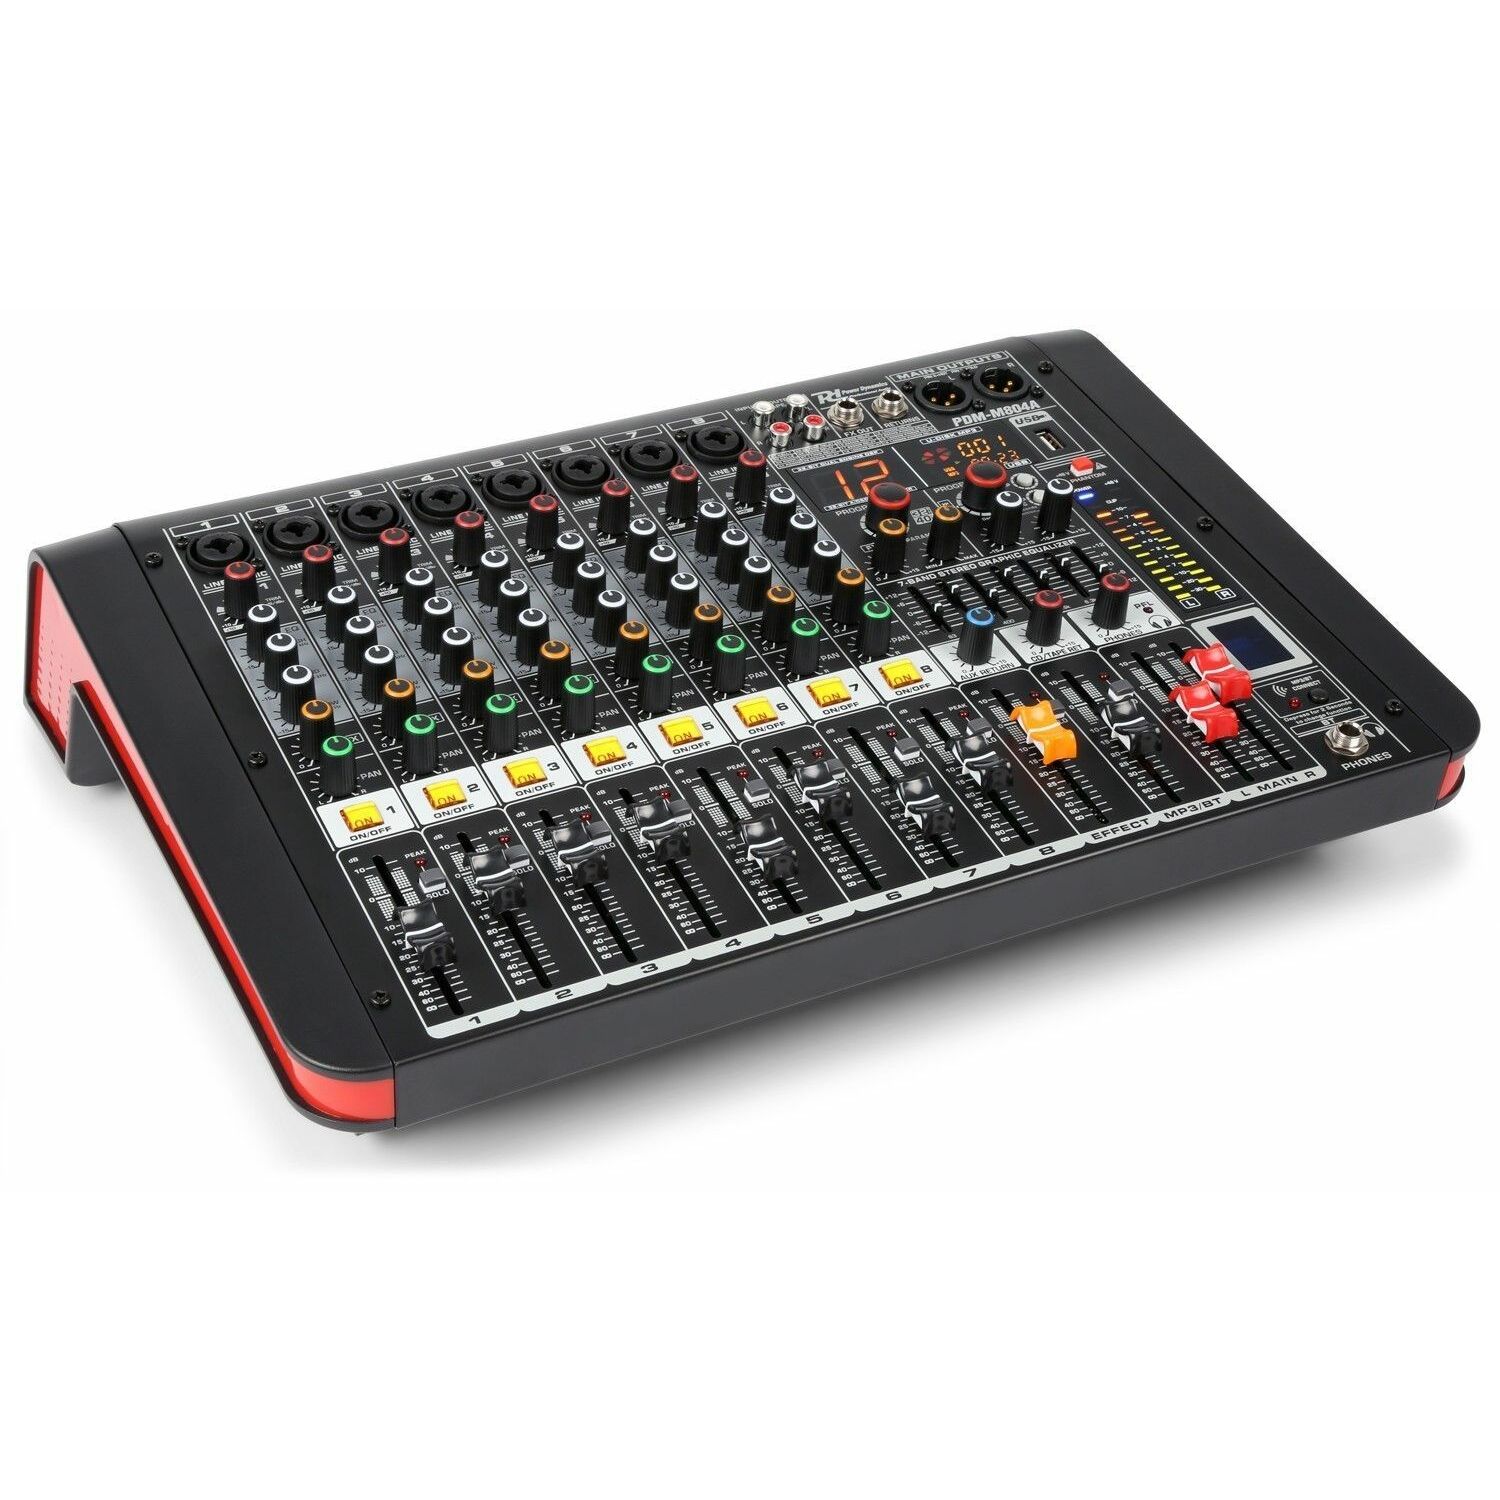 Retourdeal - Power Dynamics PDM-M804A 8 kanaals muziek mixer /